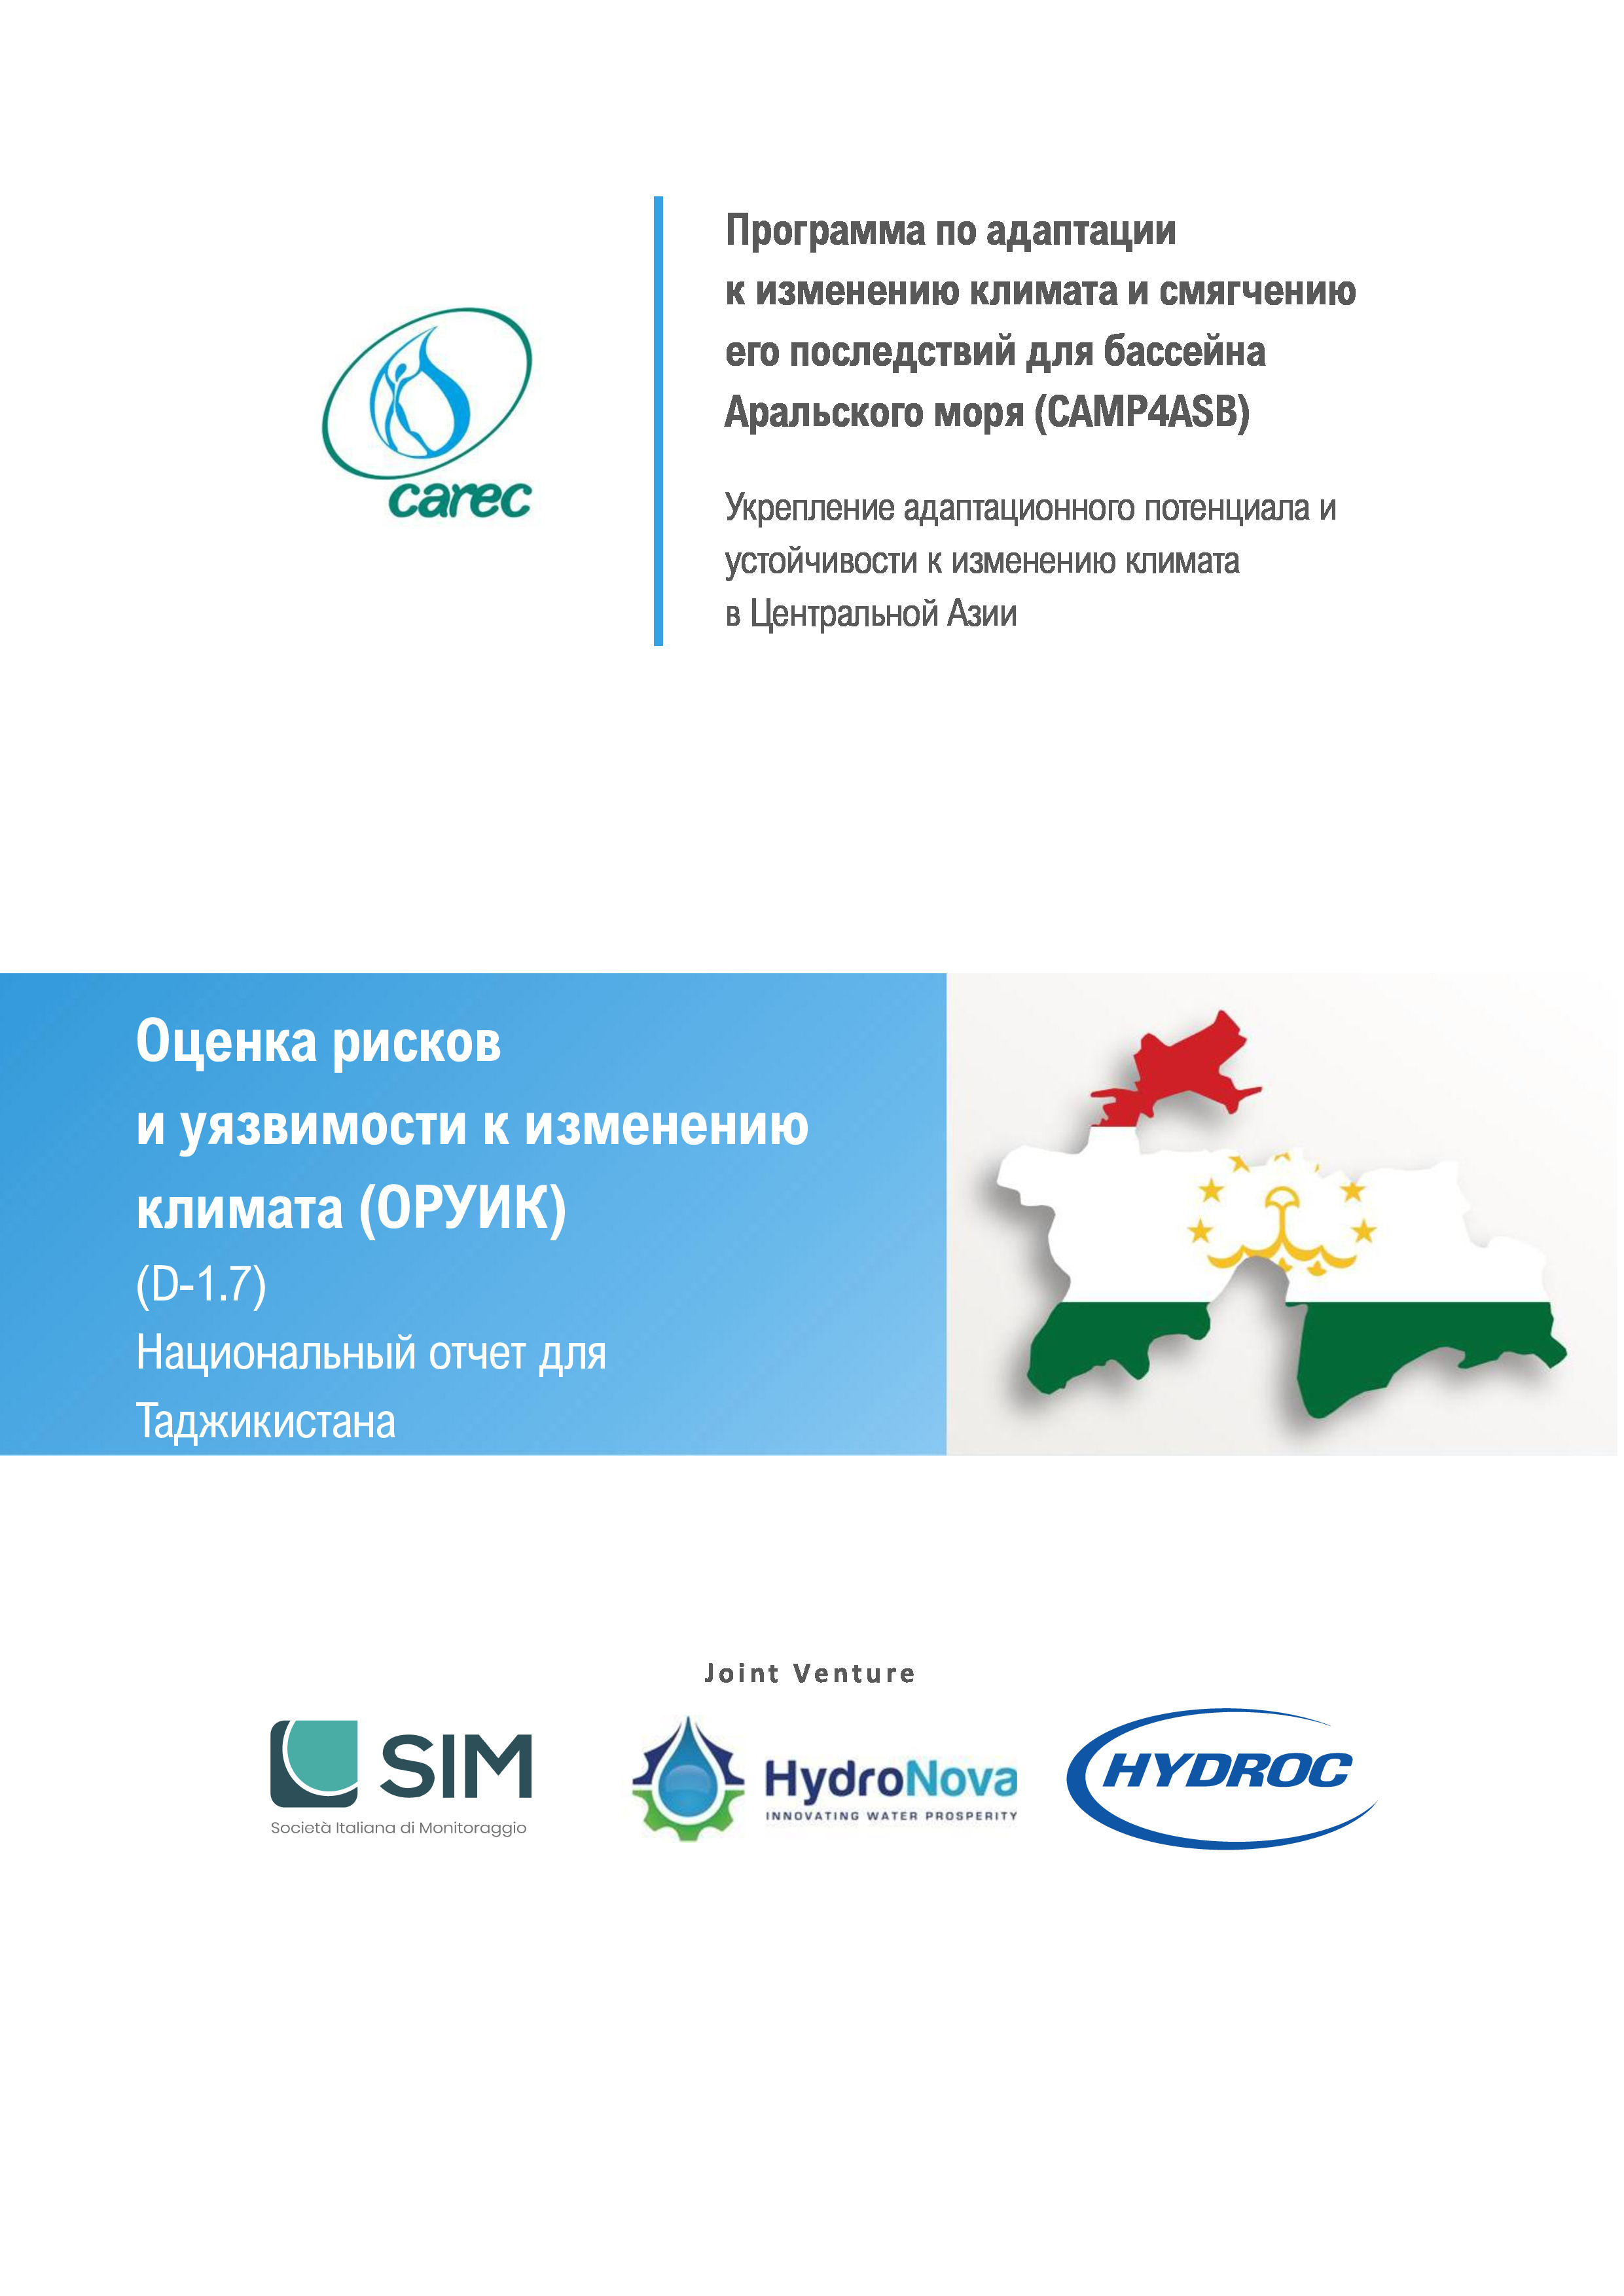 Оценка рисков и уязвимости к изменению климата (ОРУИК). Национальный отчет для Таджикистана, 2021